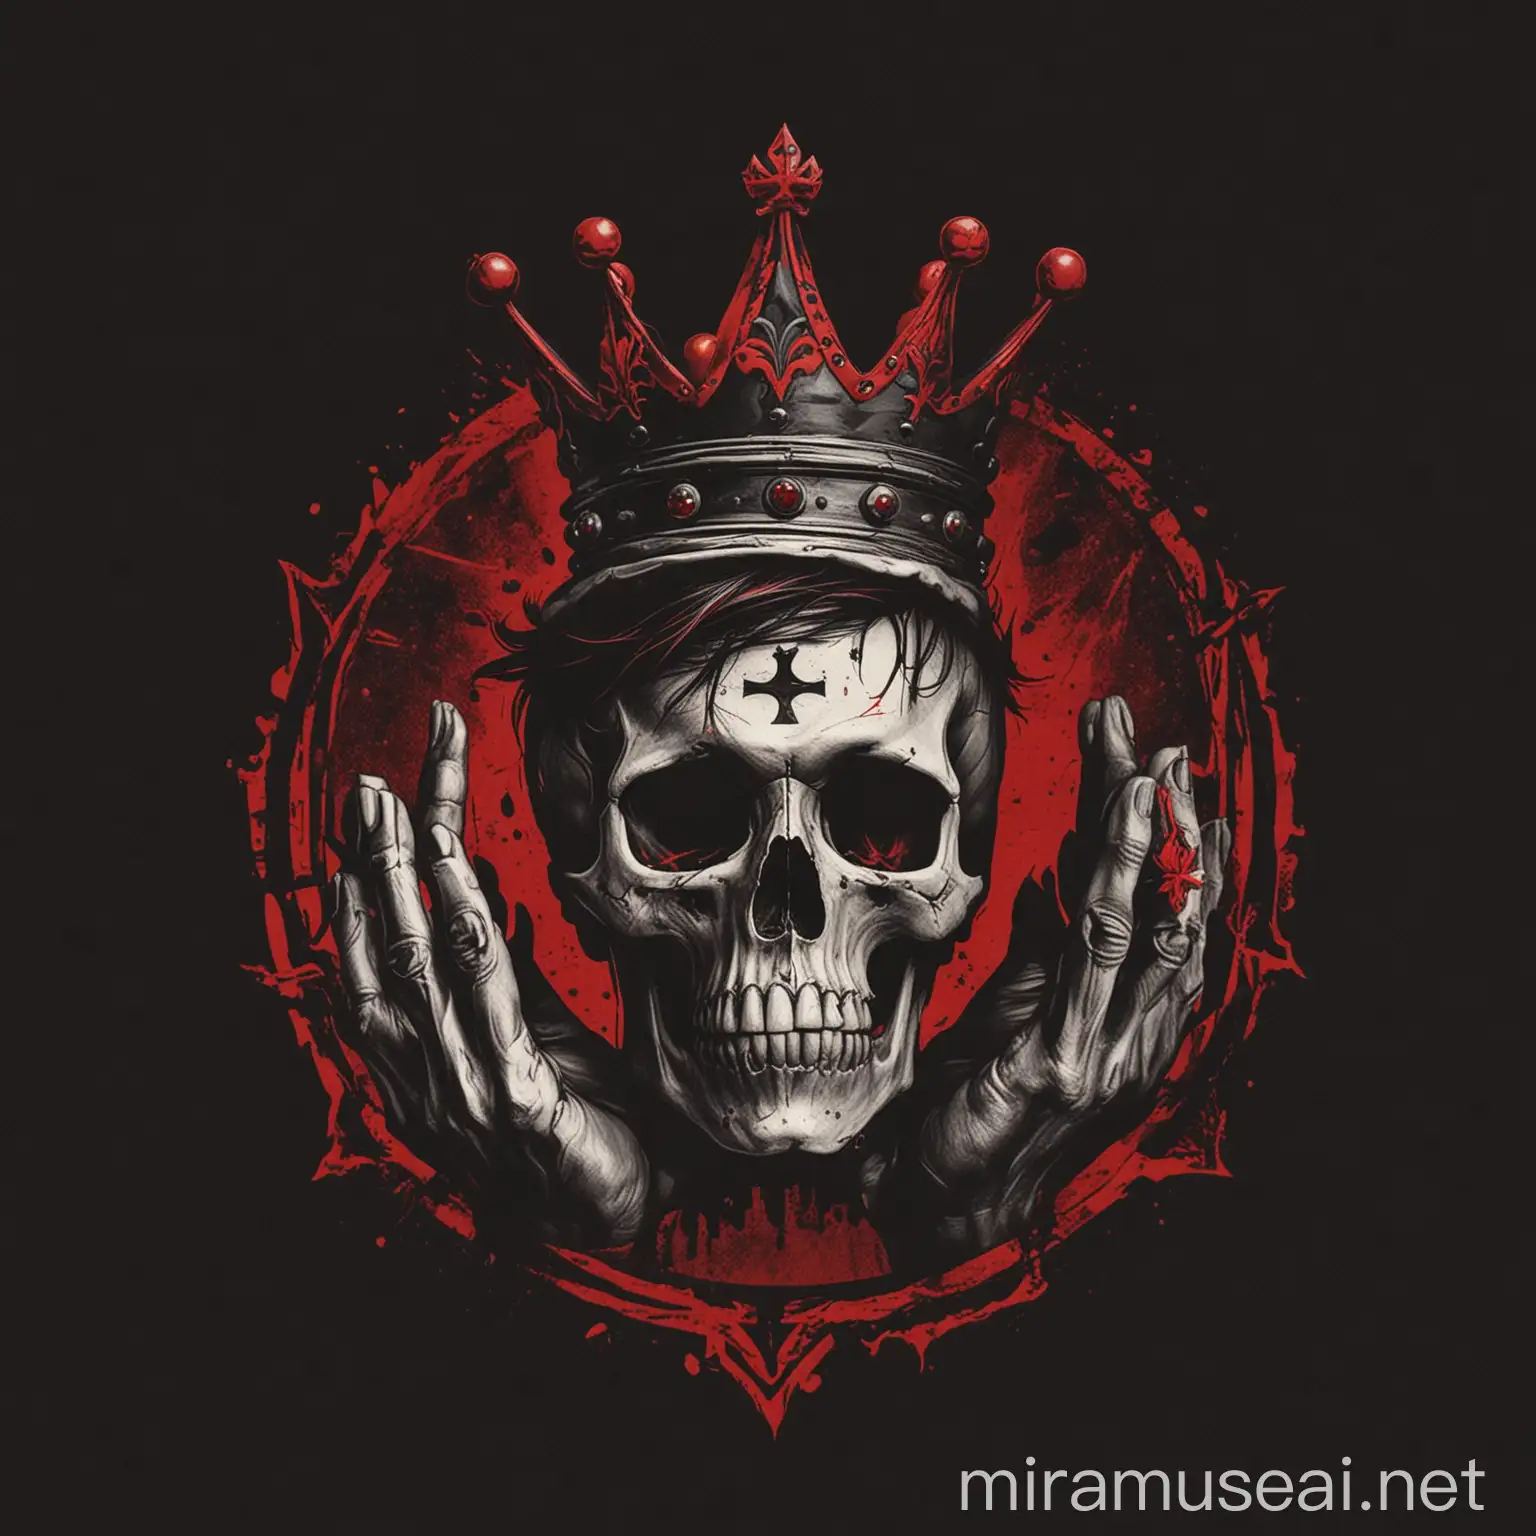 Ein Logo mit schwarzer hand, einen totenkopf und krone als logo in schwarz rot